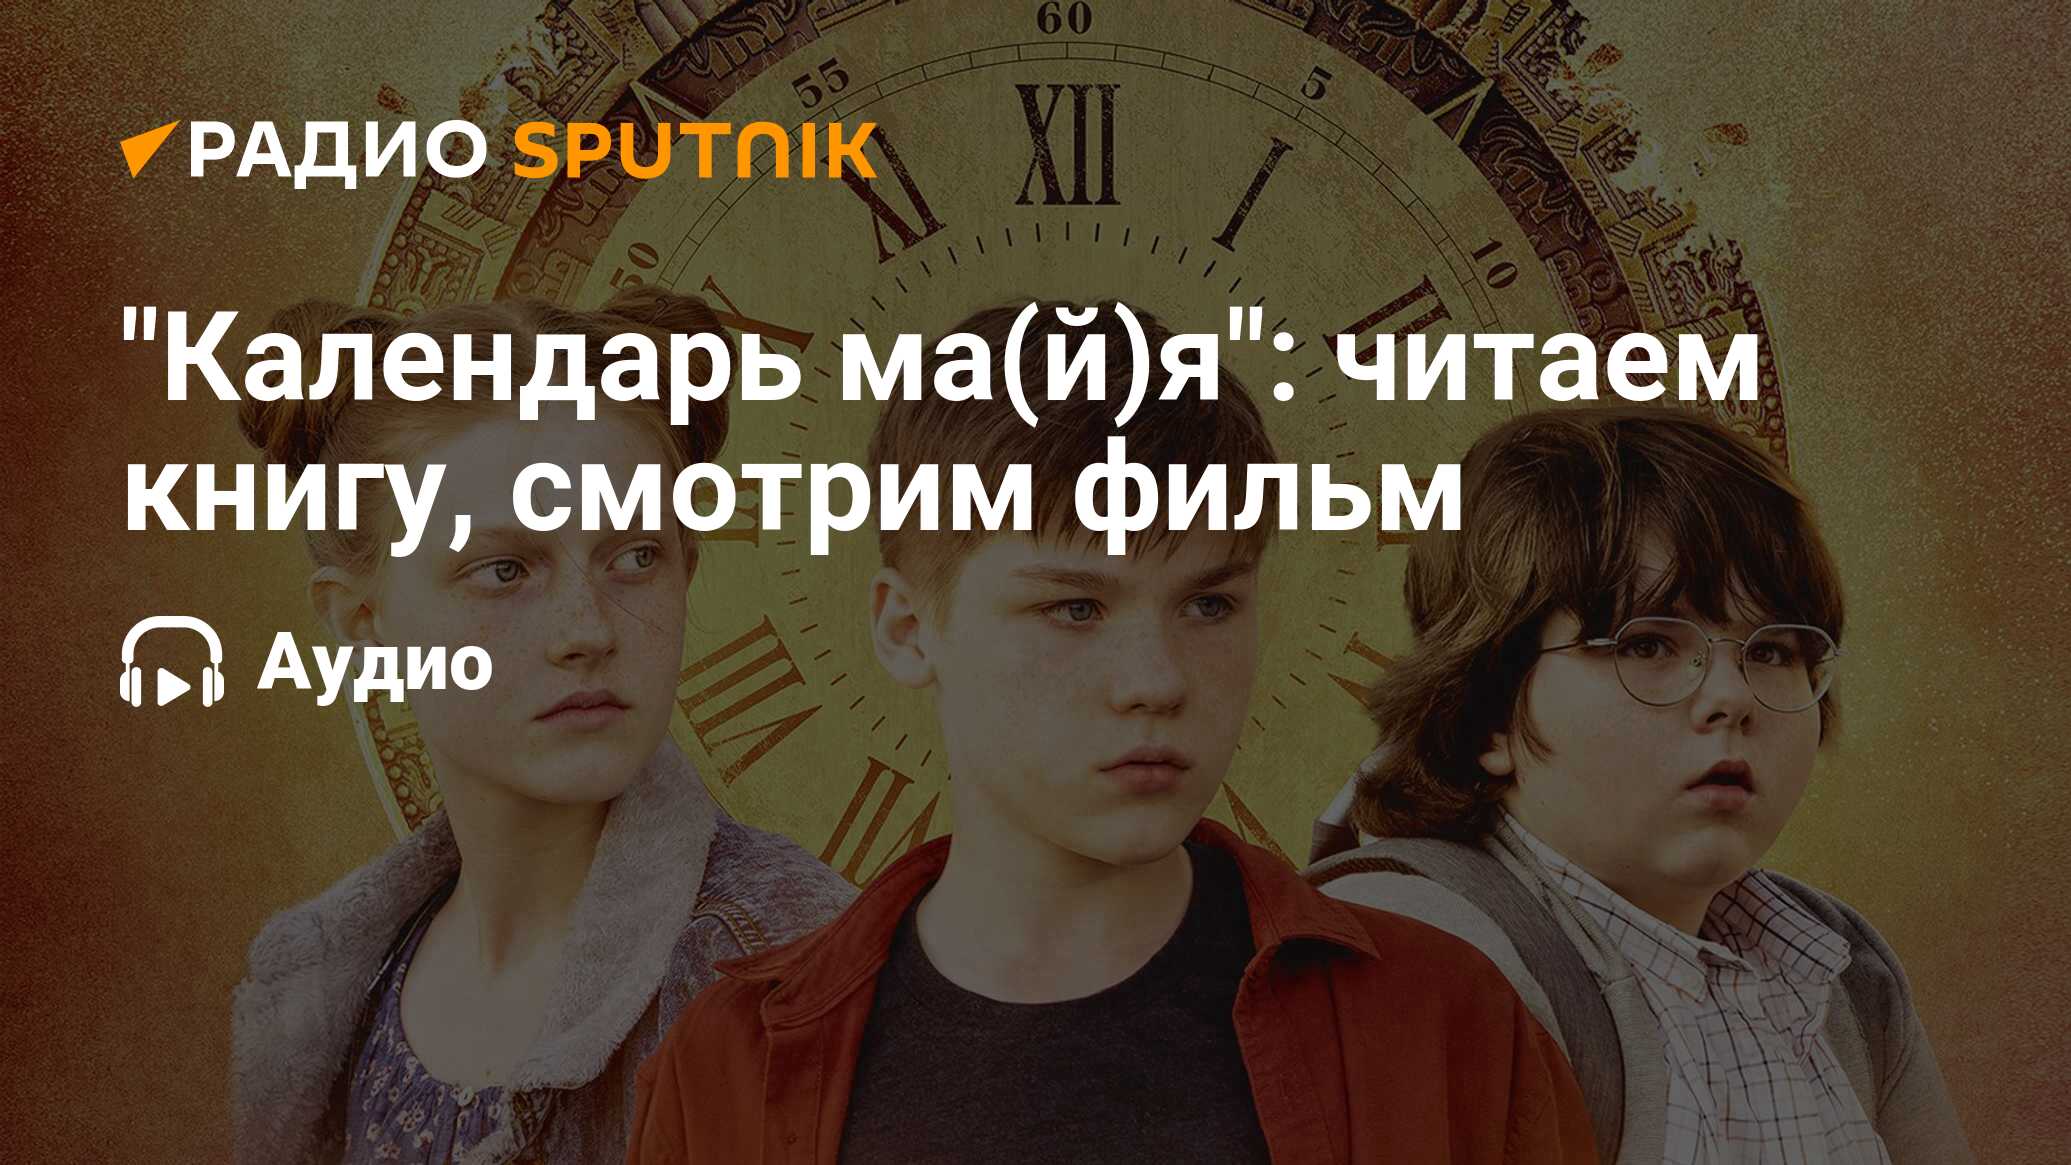 Календарь ма(й)я: читаем книгу, смотрим фильм - Радио Sputnik, 20.08.2022